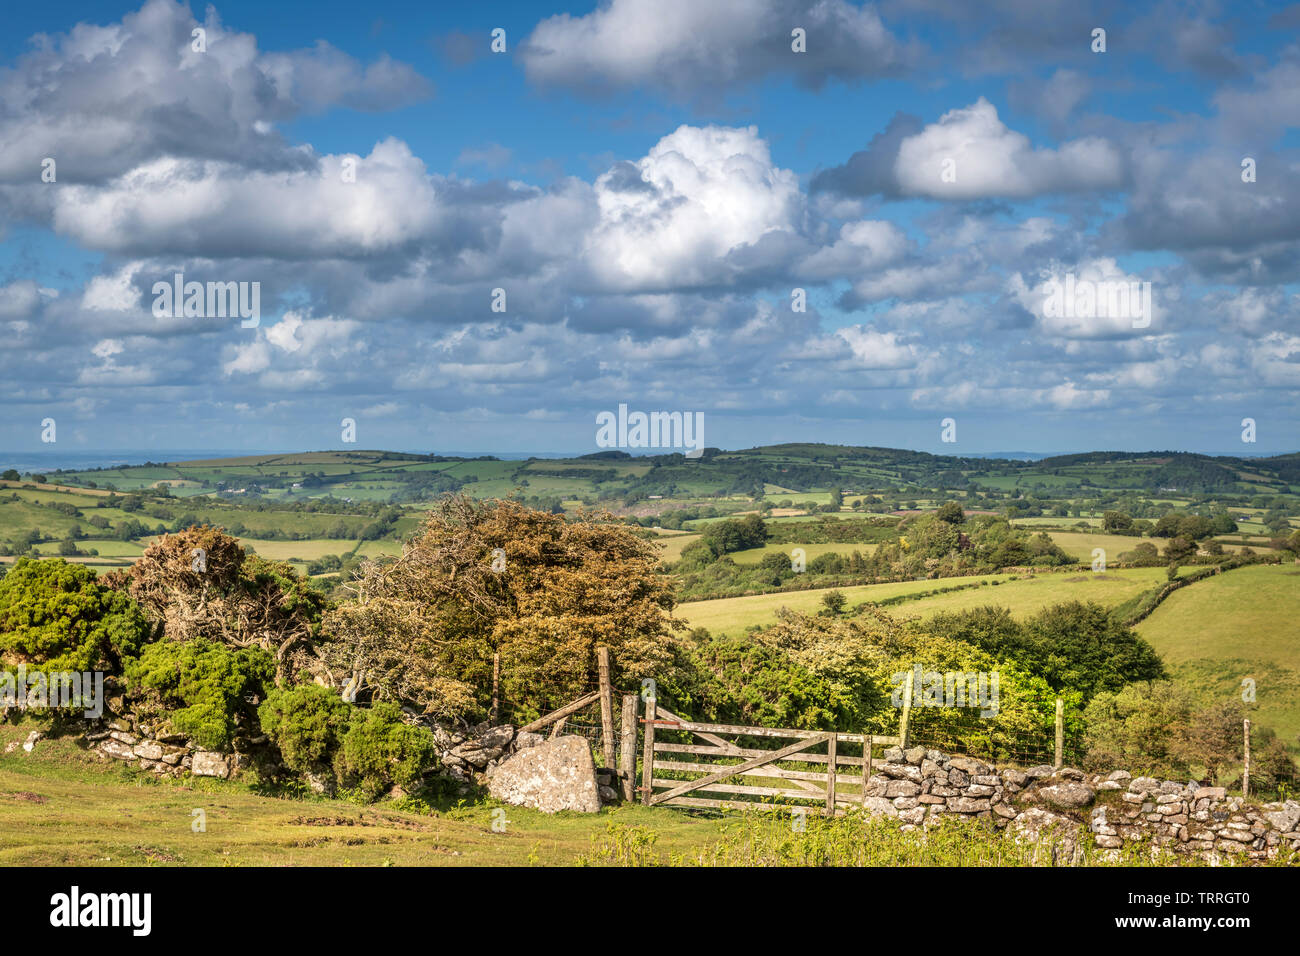 L'une des nombreuses frontières qui traversent le paysage du Parc National de Dartmoor, dans le Devon (Angleterre). Banque D'Images